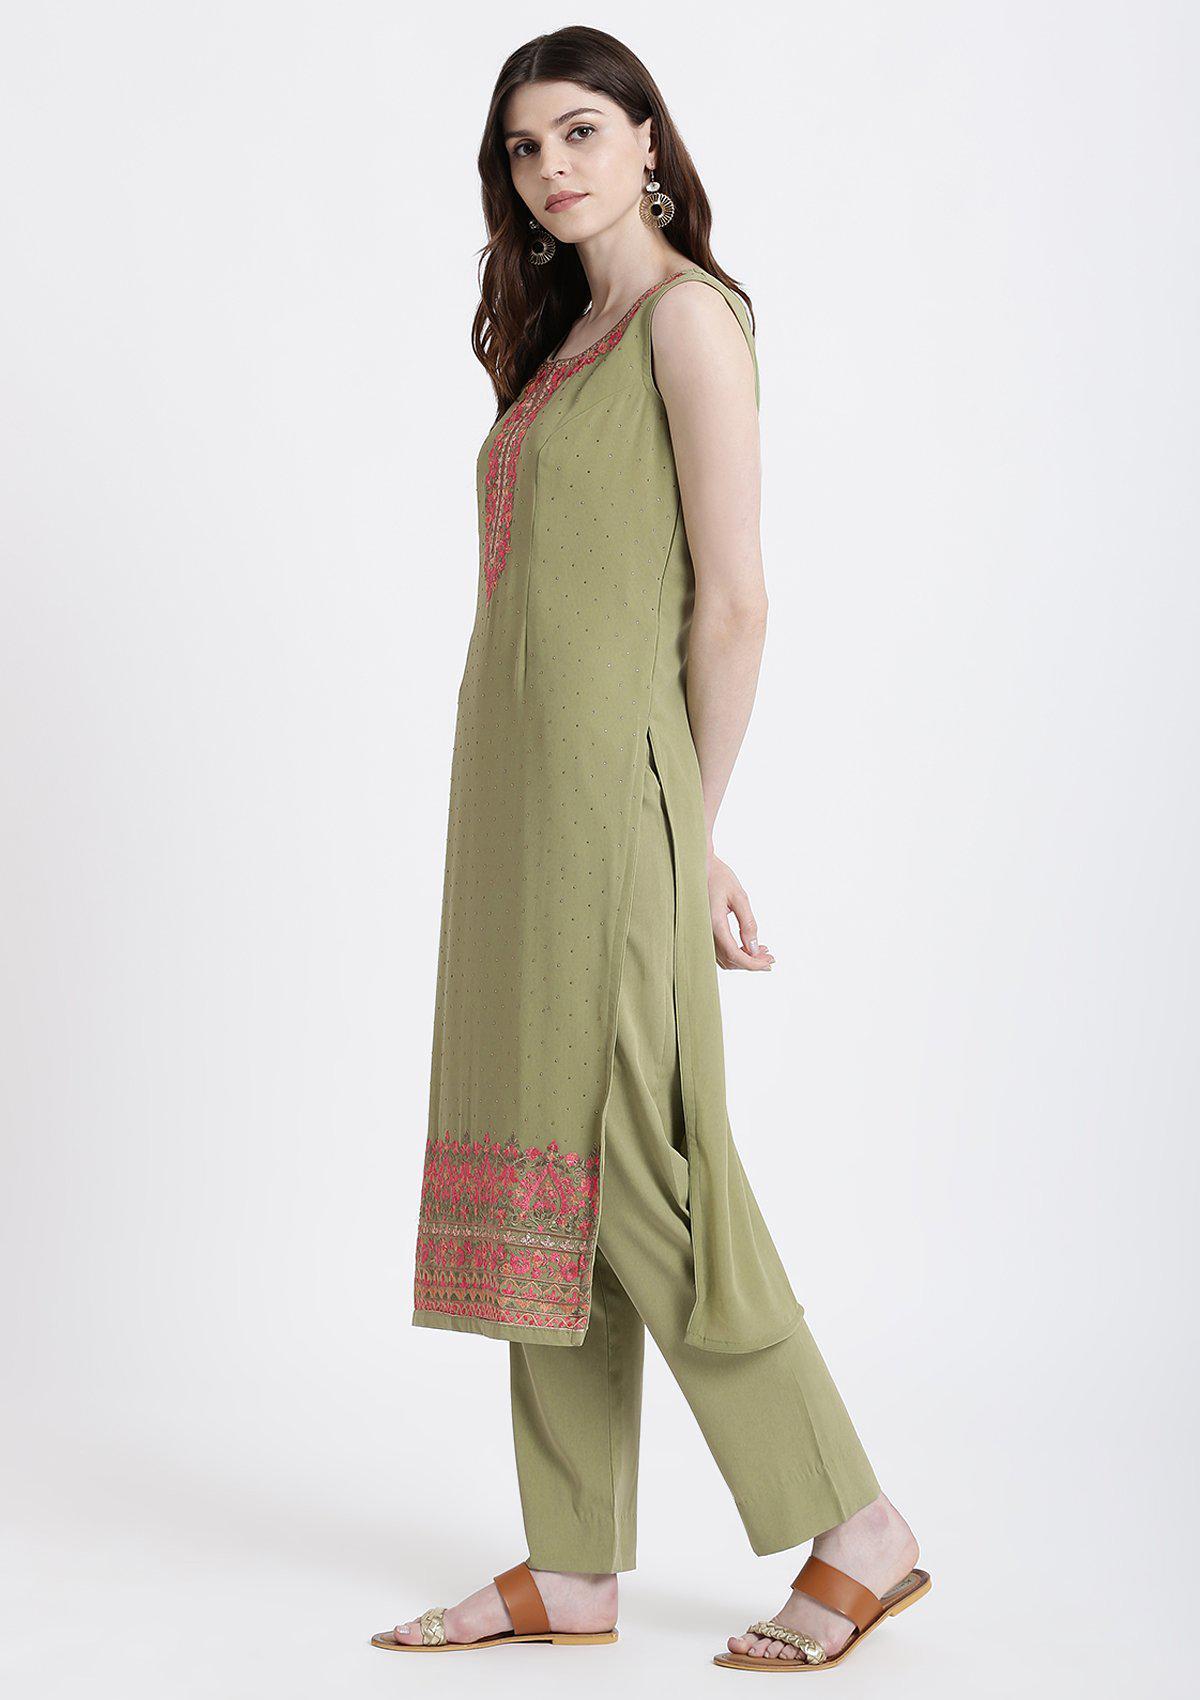 Pista Green Threadwork Georgette Designer Salwar Suit-Koskii